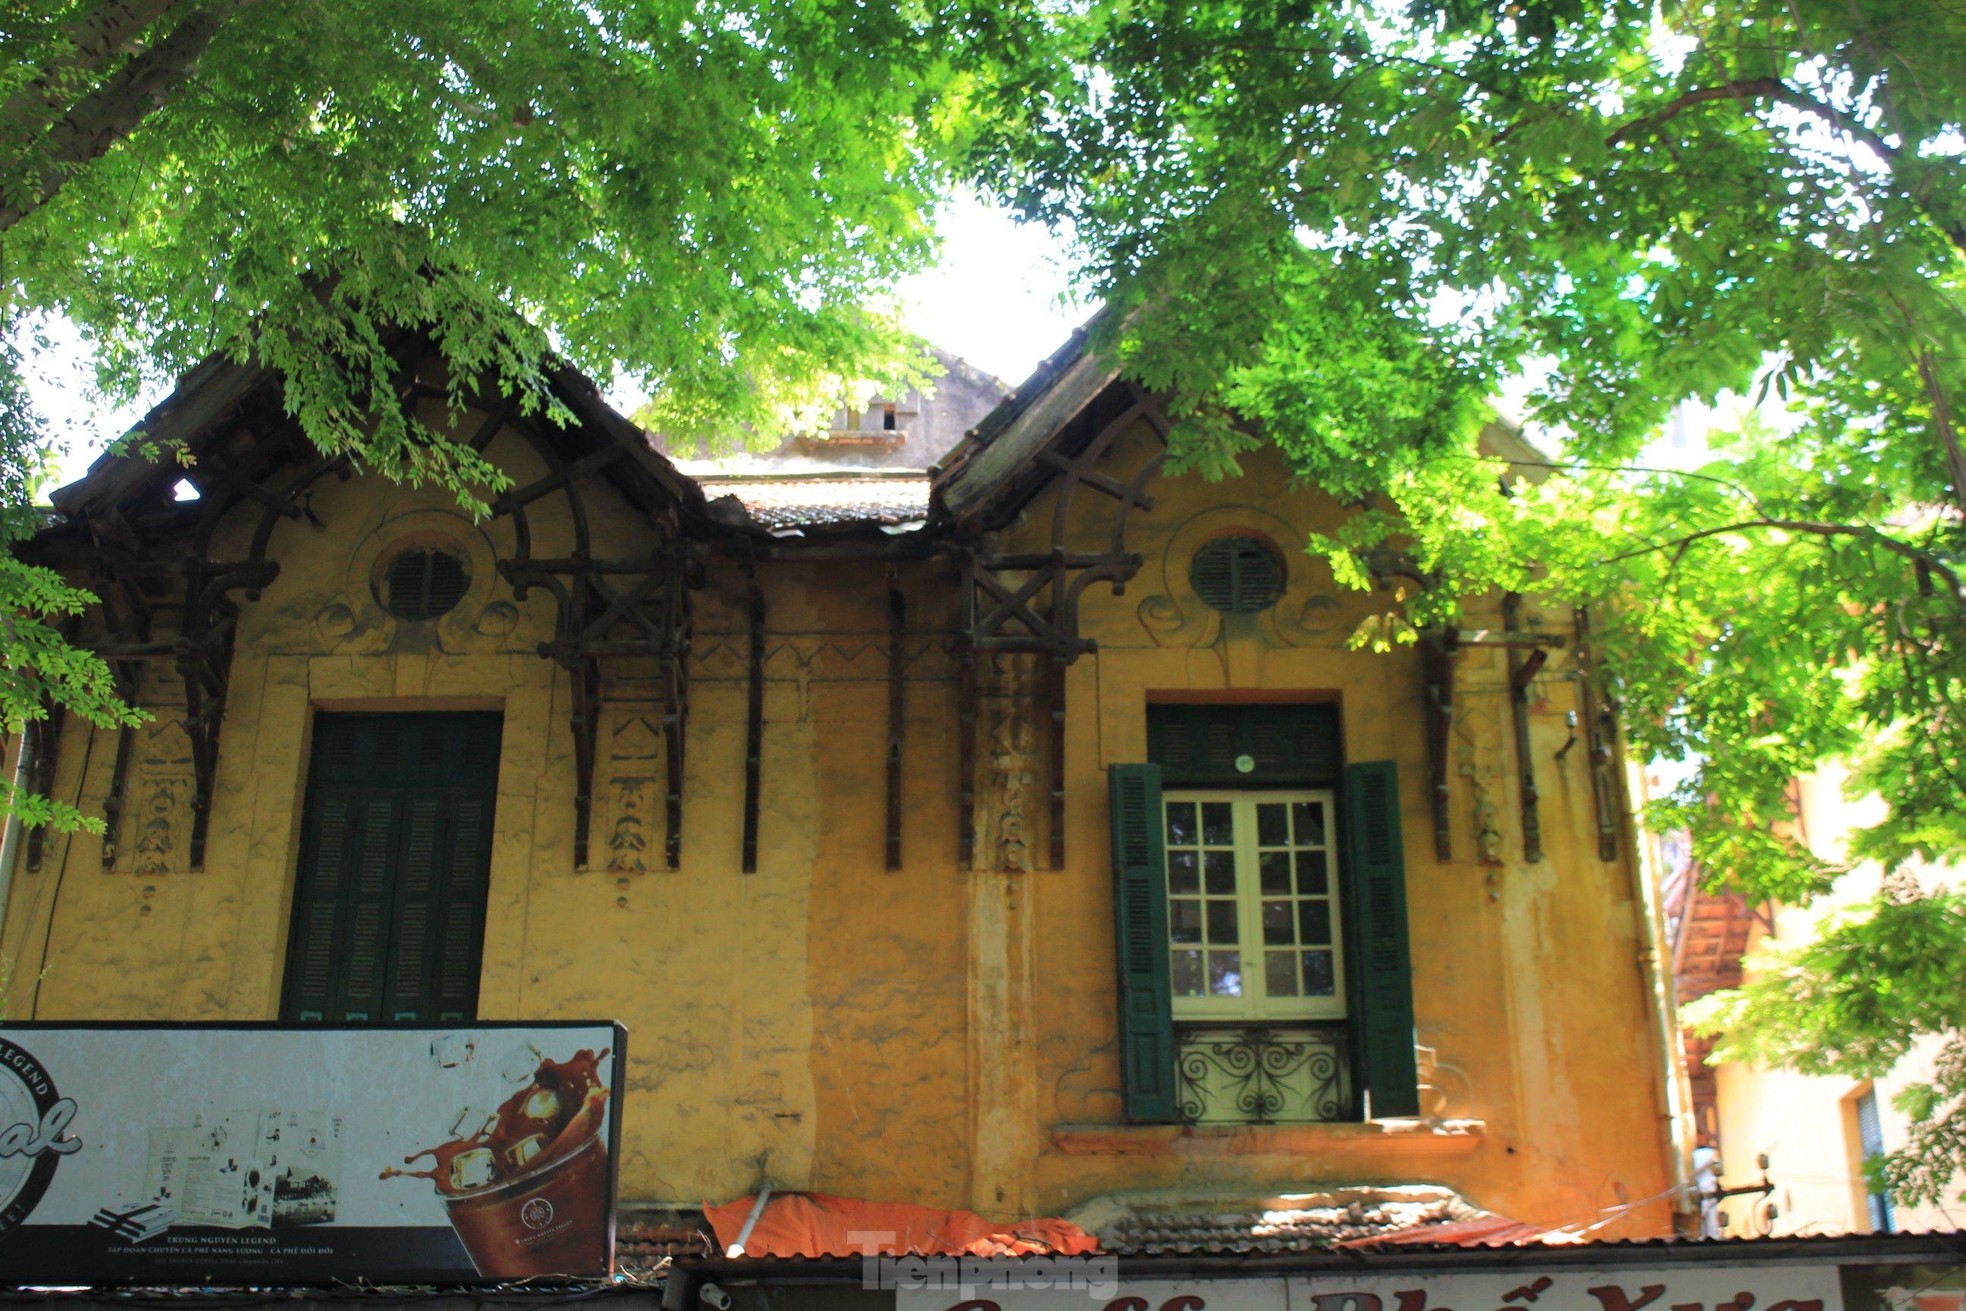 Chiêm ngưỡng vẻ đẹp của các biệt thự Pháp cổ trong nắng thu Hà Nội ảnh 2